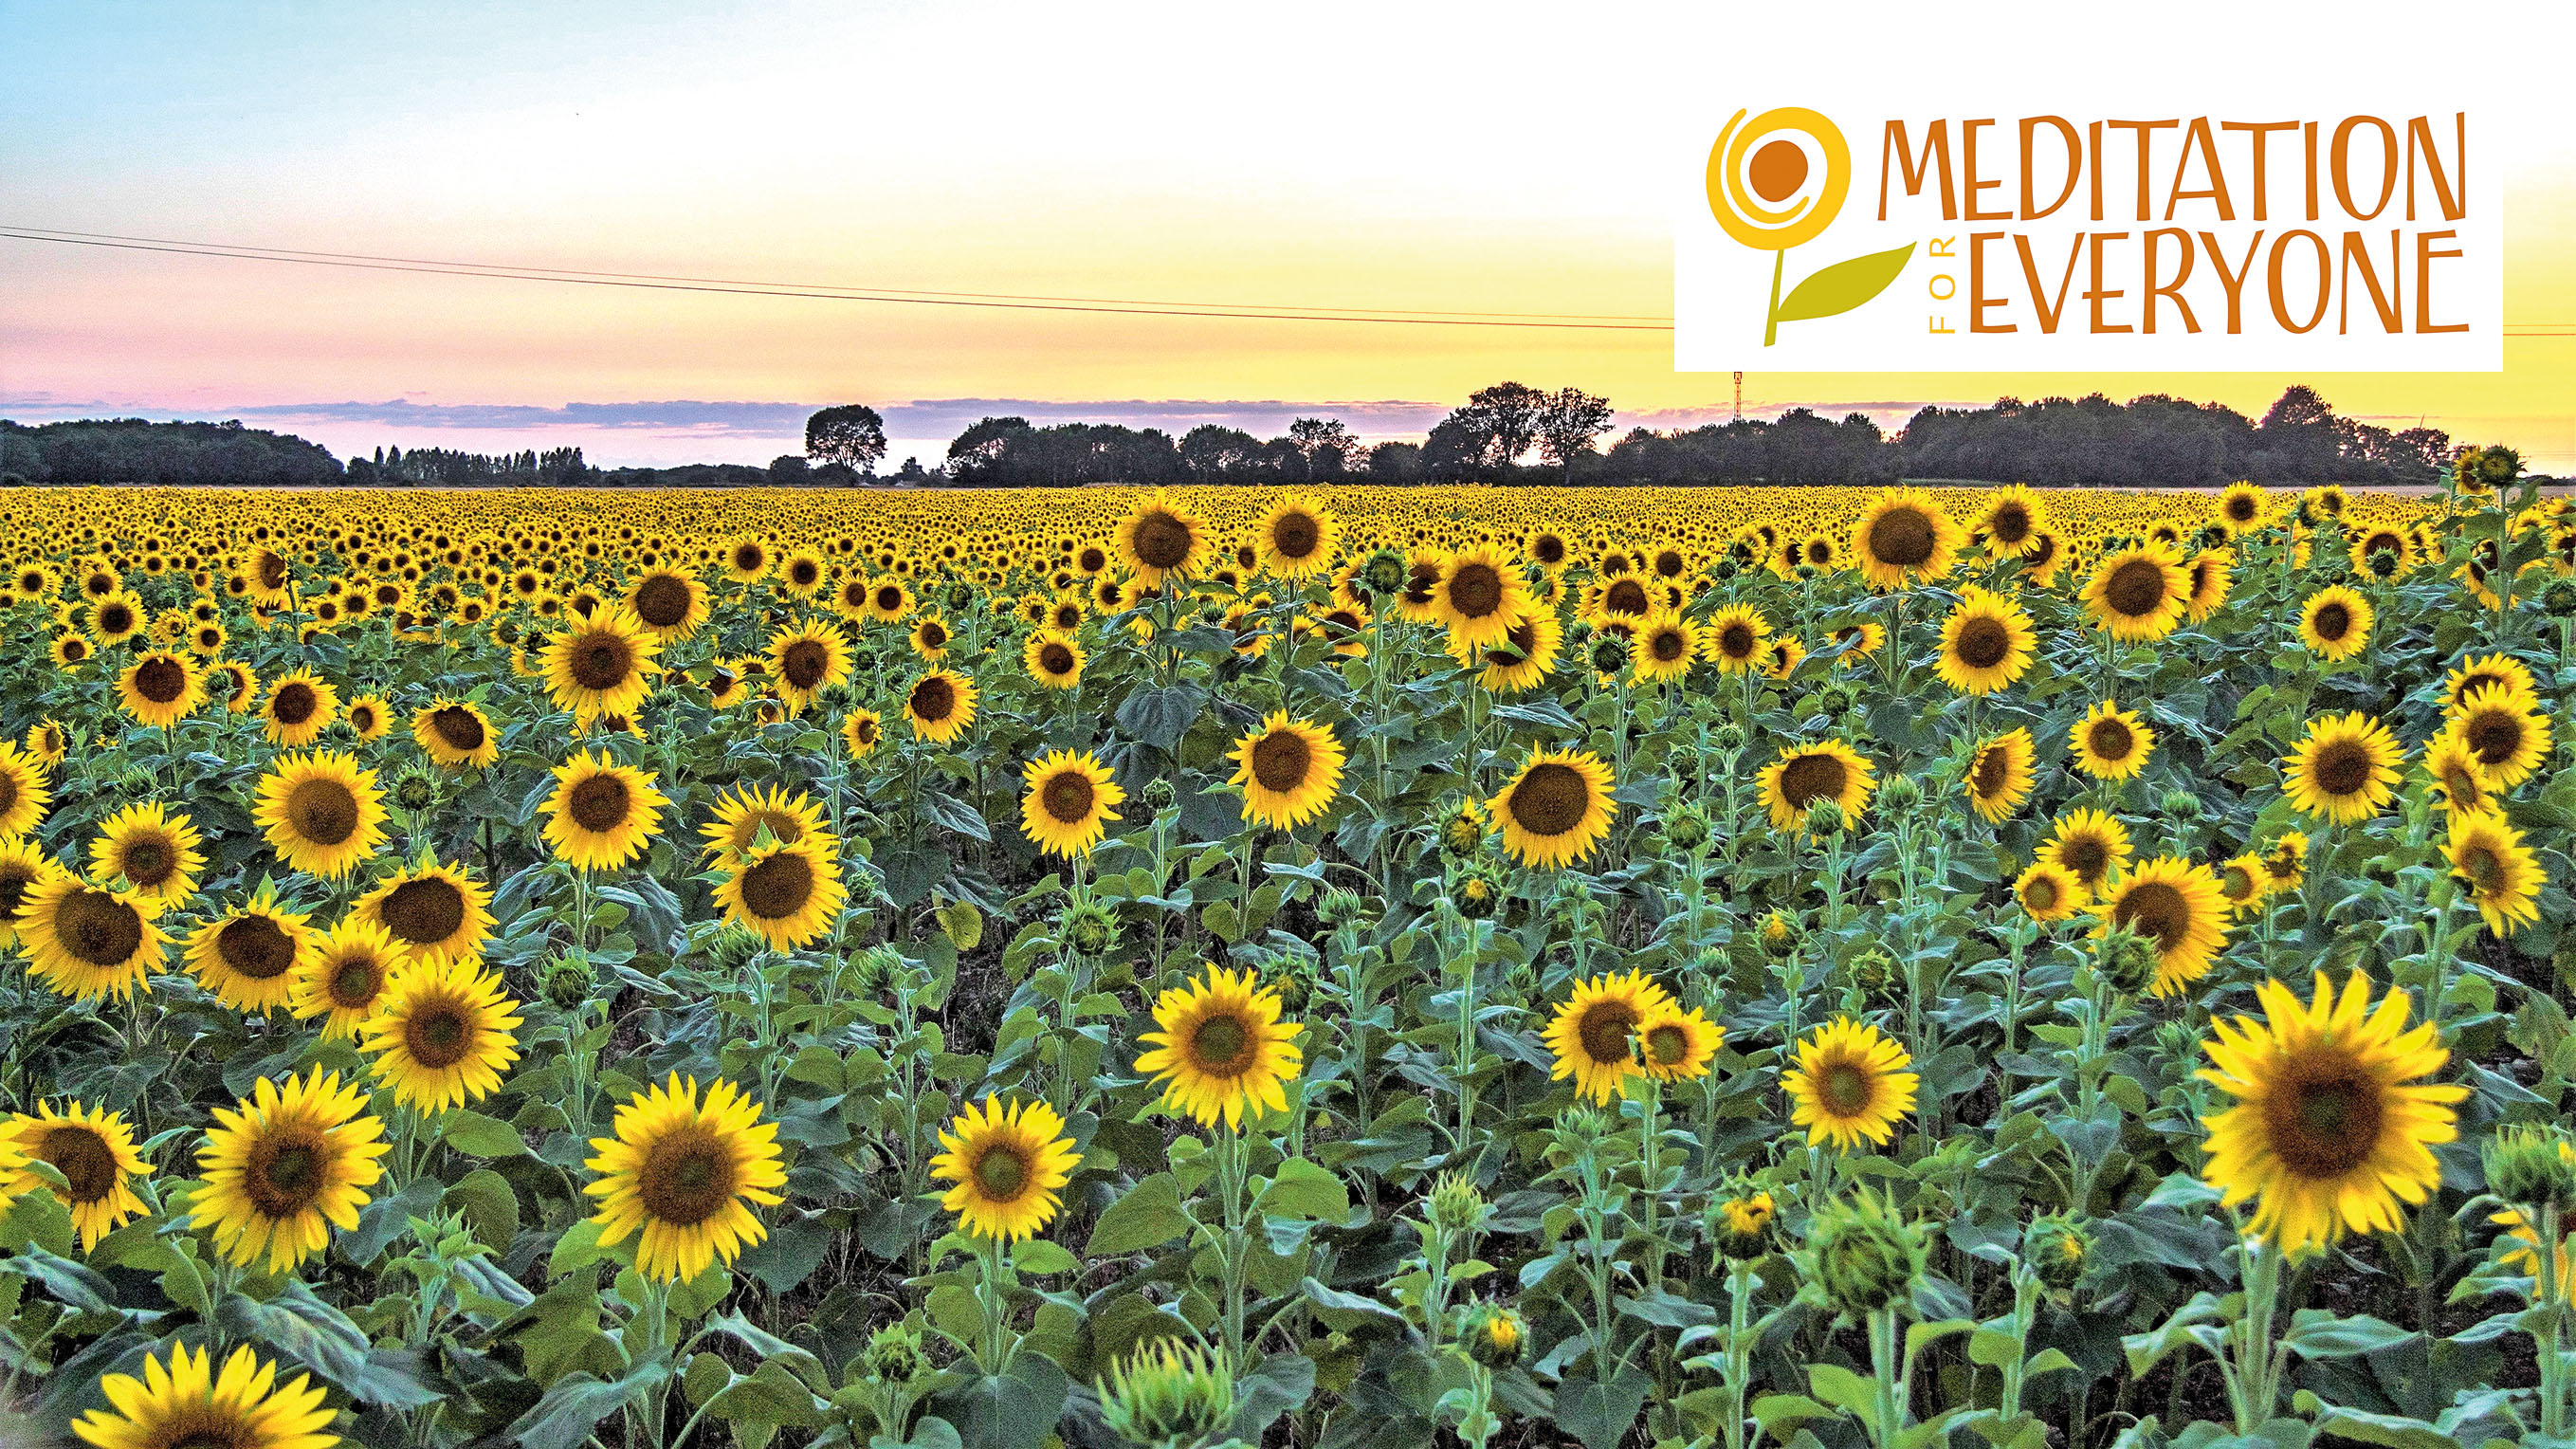 Het logo van mijn website is een veld vol zonnebloemen.